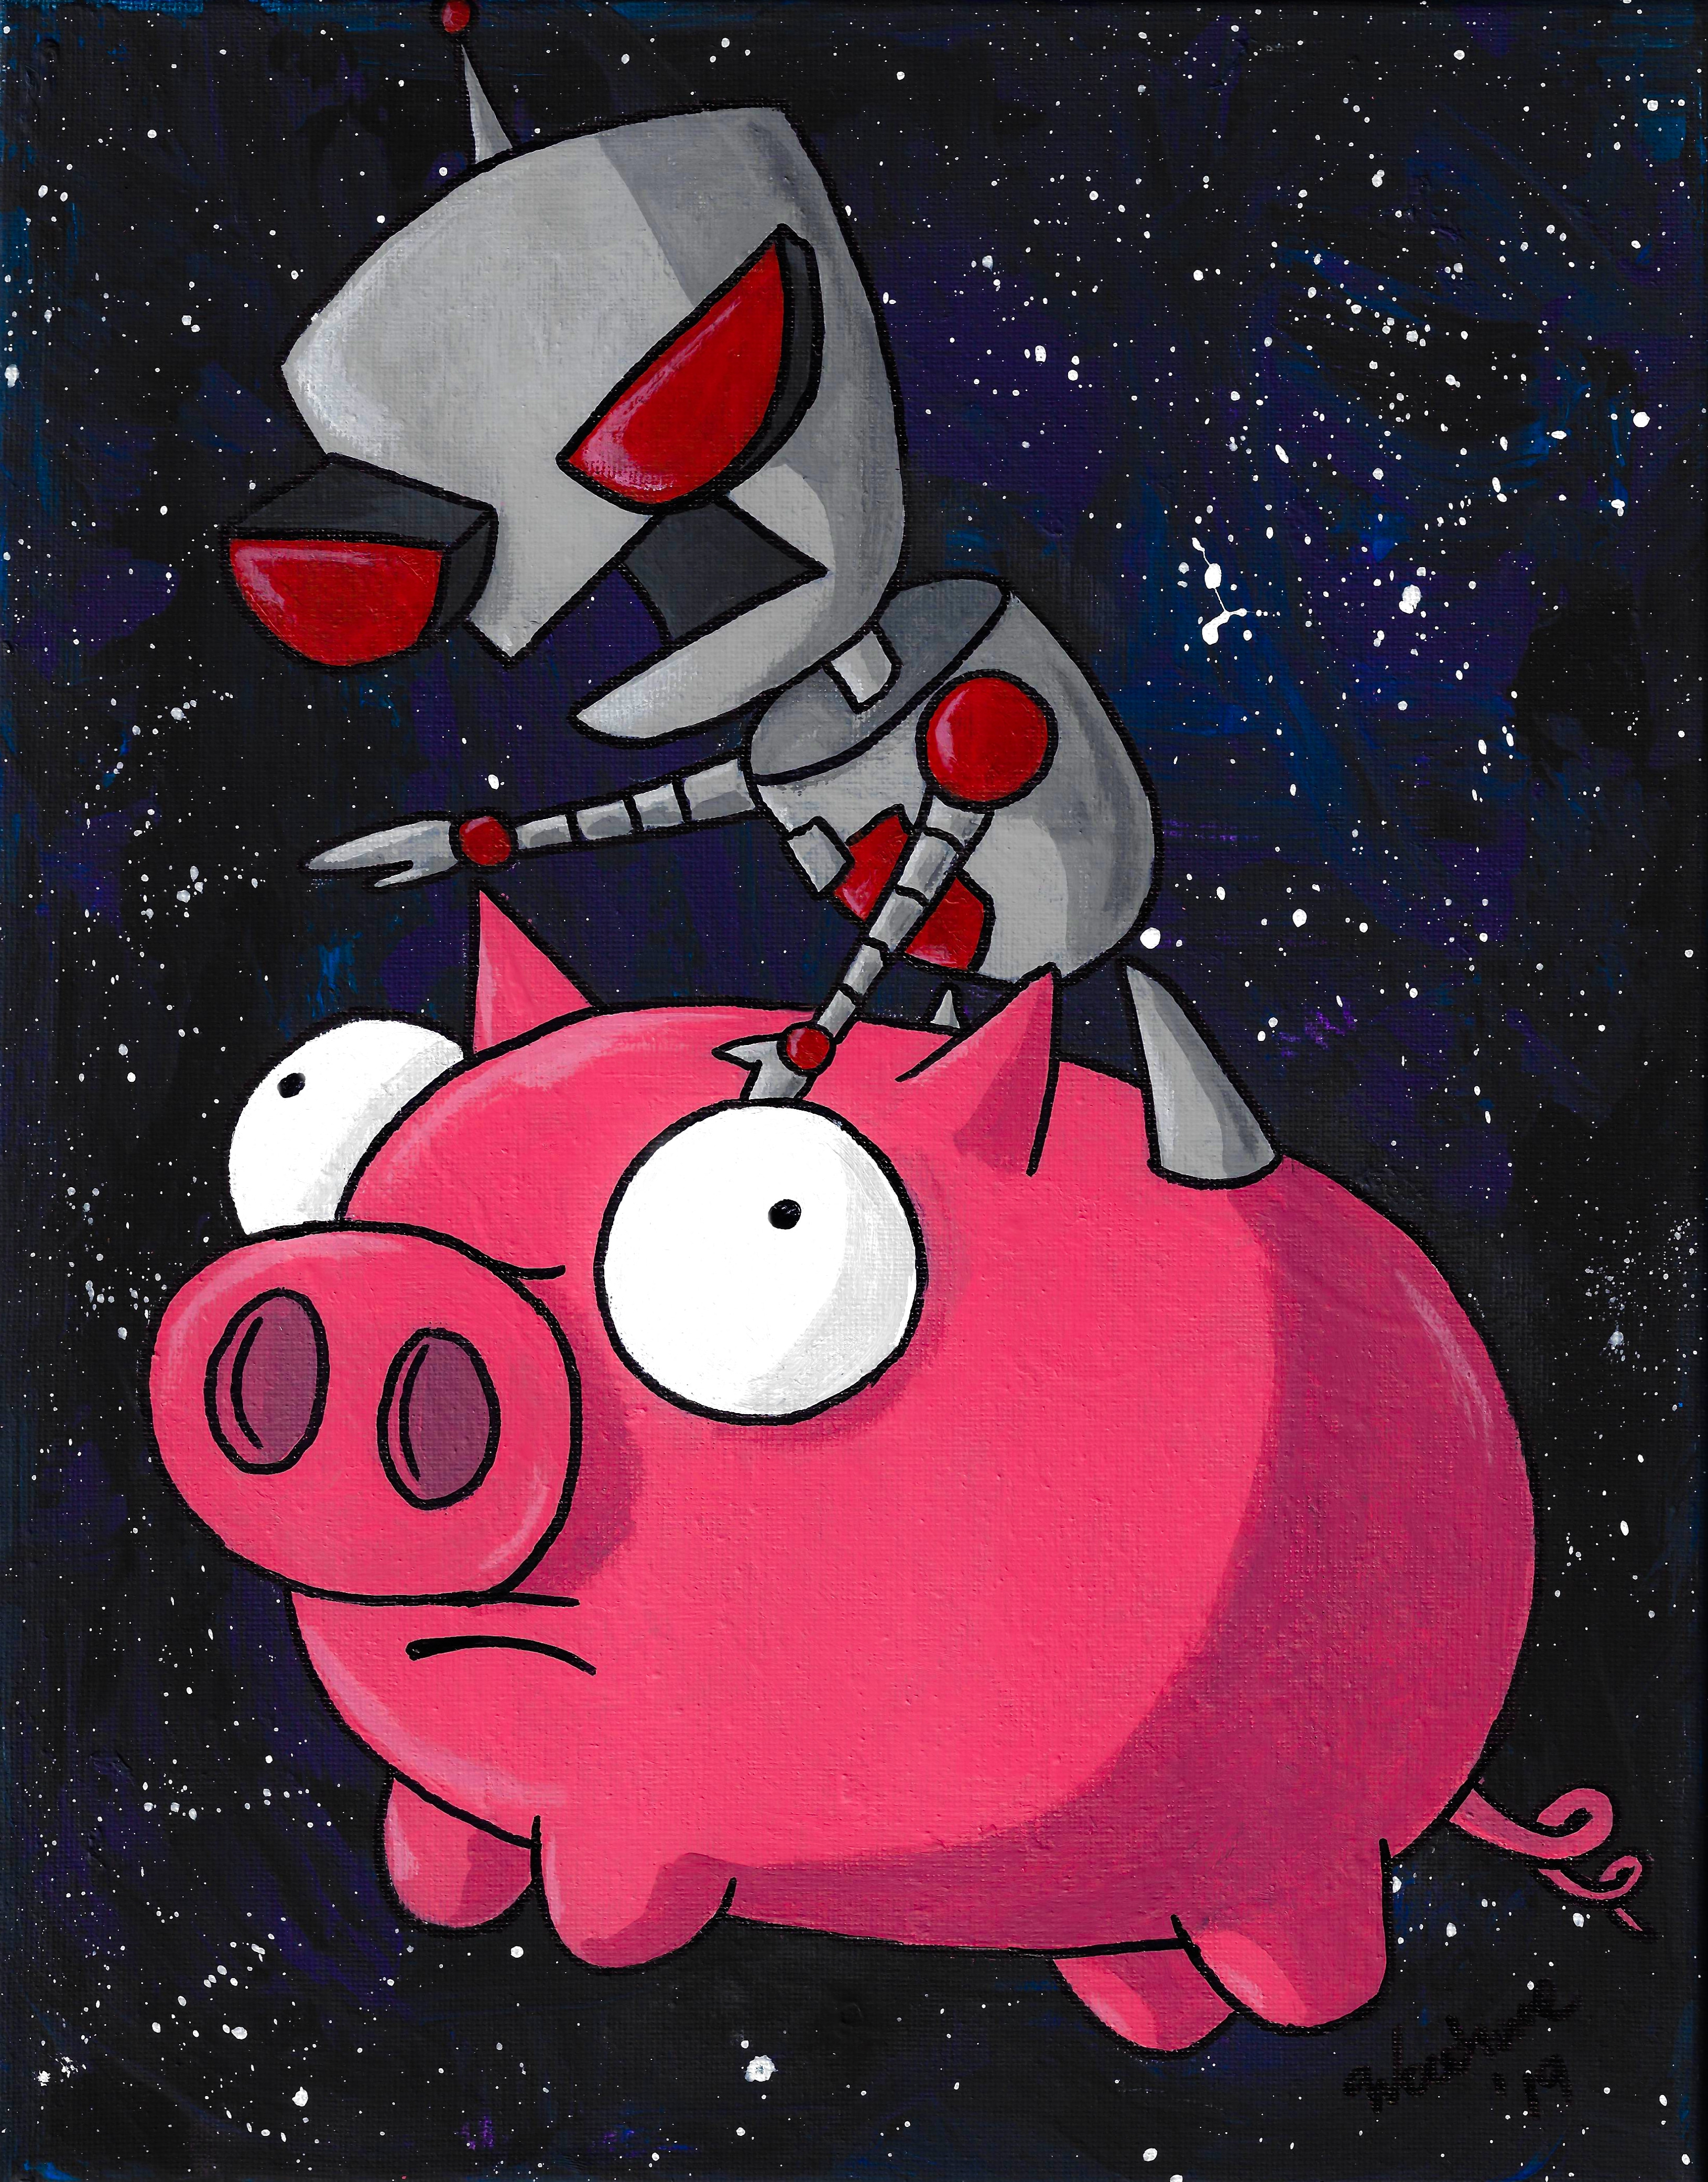 Gir and Piggy. Invader Zim fan art.